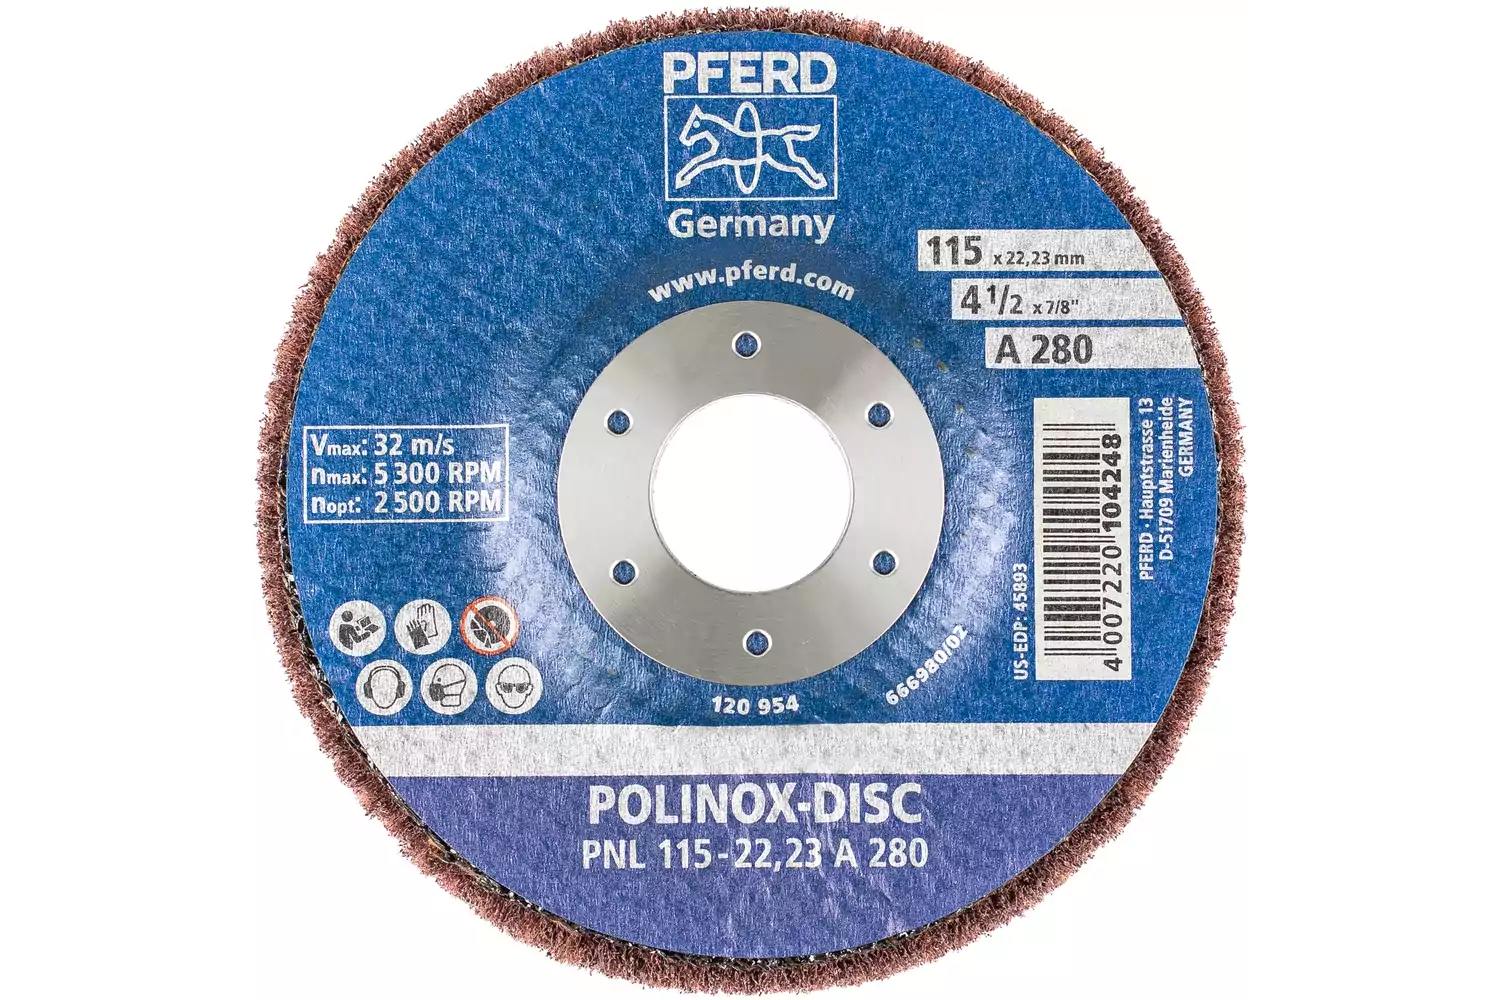 Disque abrasif en non-tissé POLINOX PNL Ø 115 mm, alésage Ø 22,23 mm, A280 pour ponçage fin et finition 3